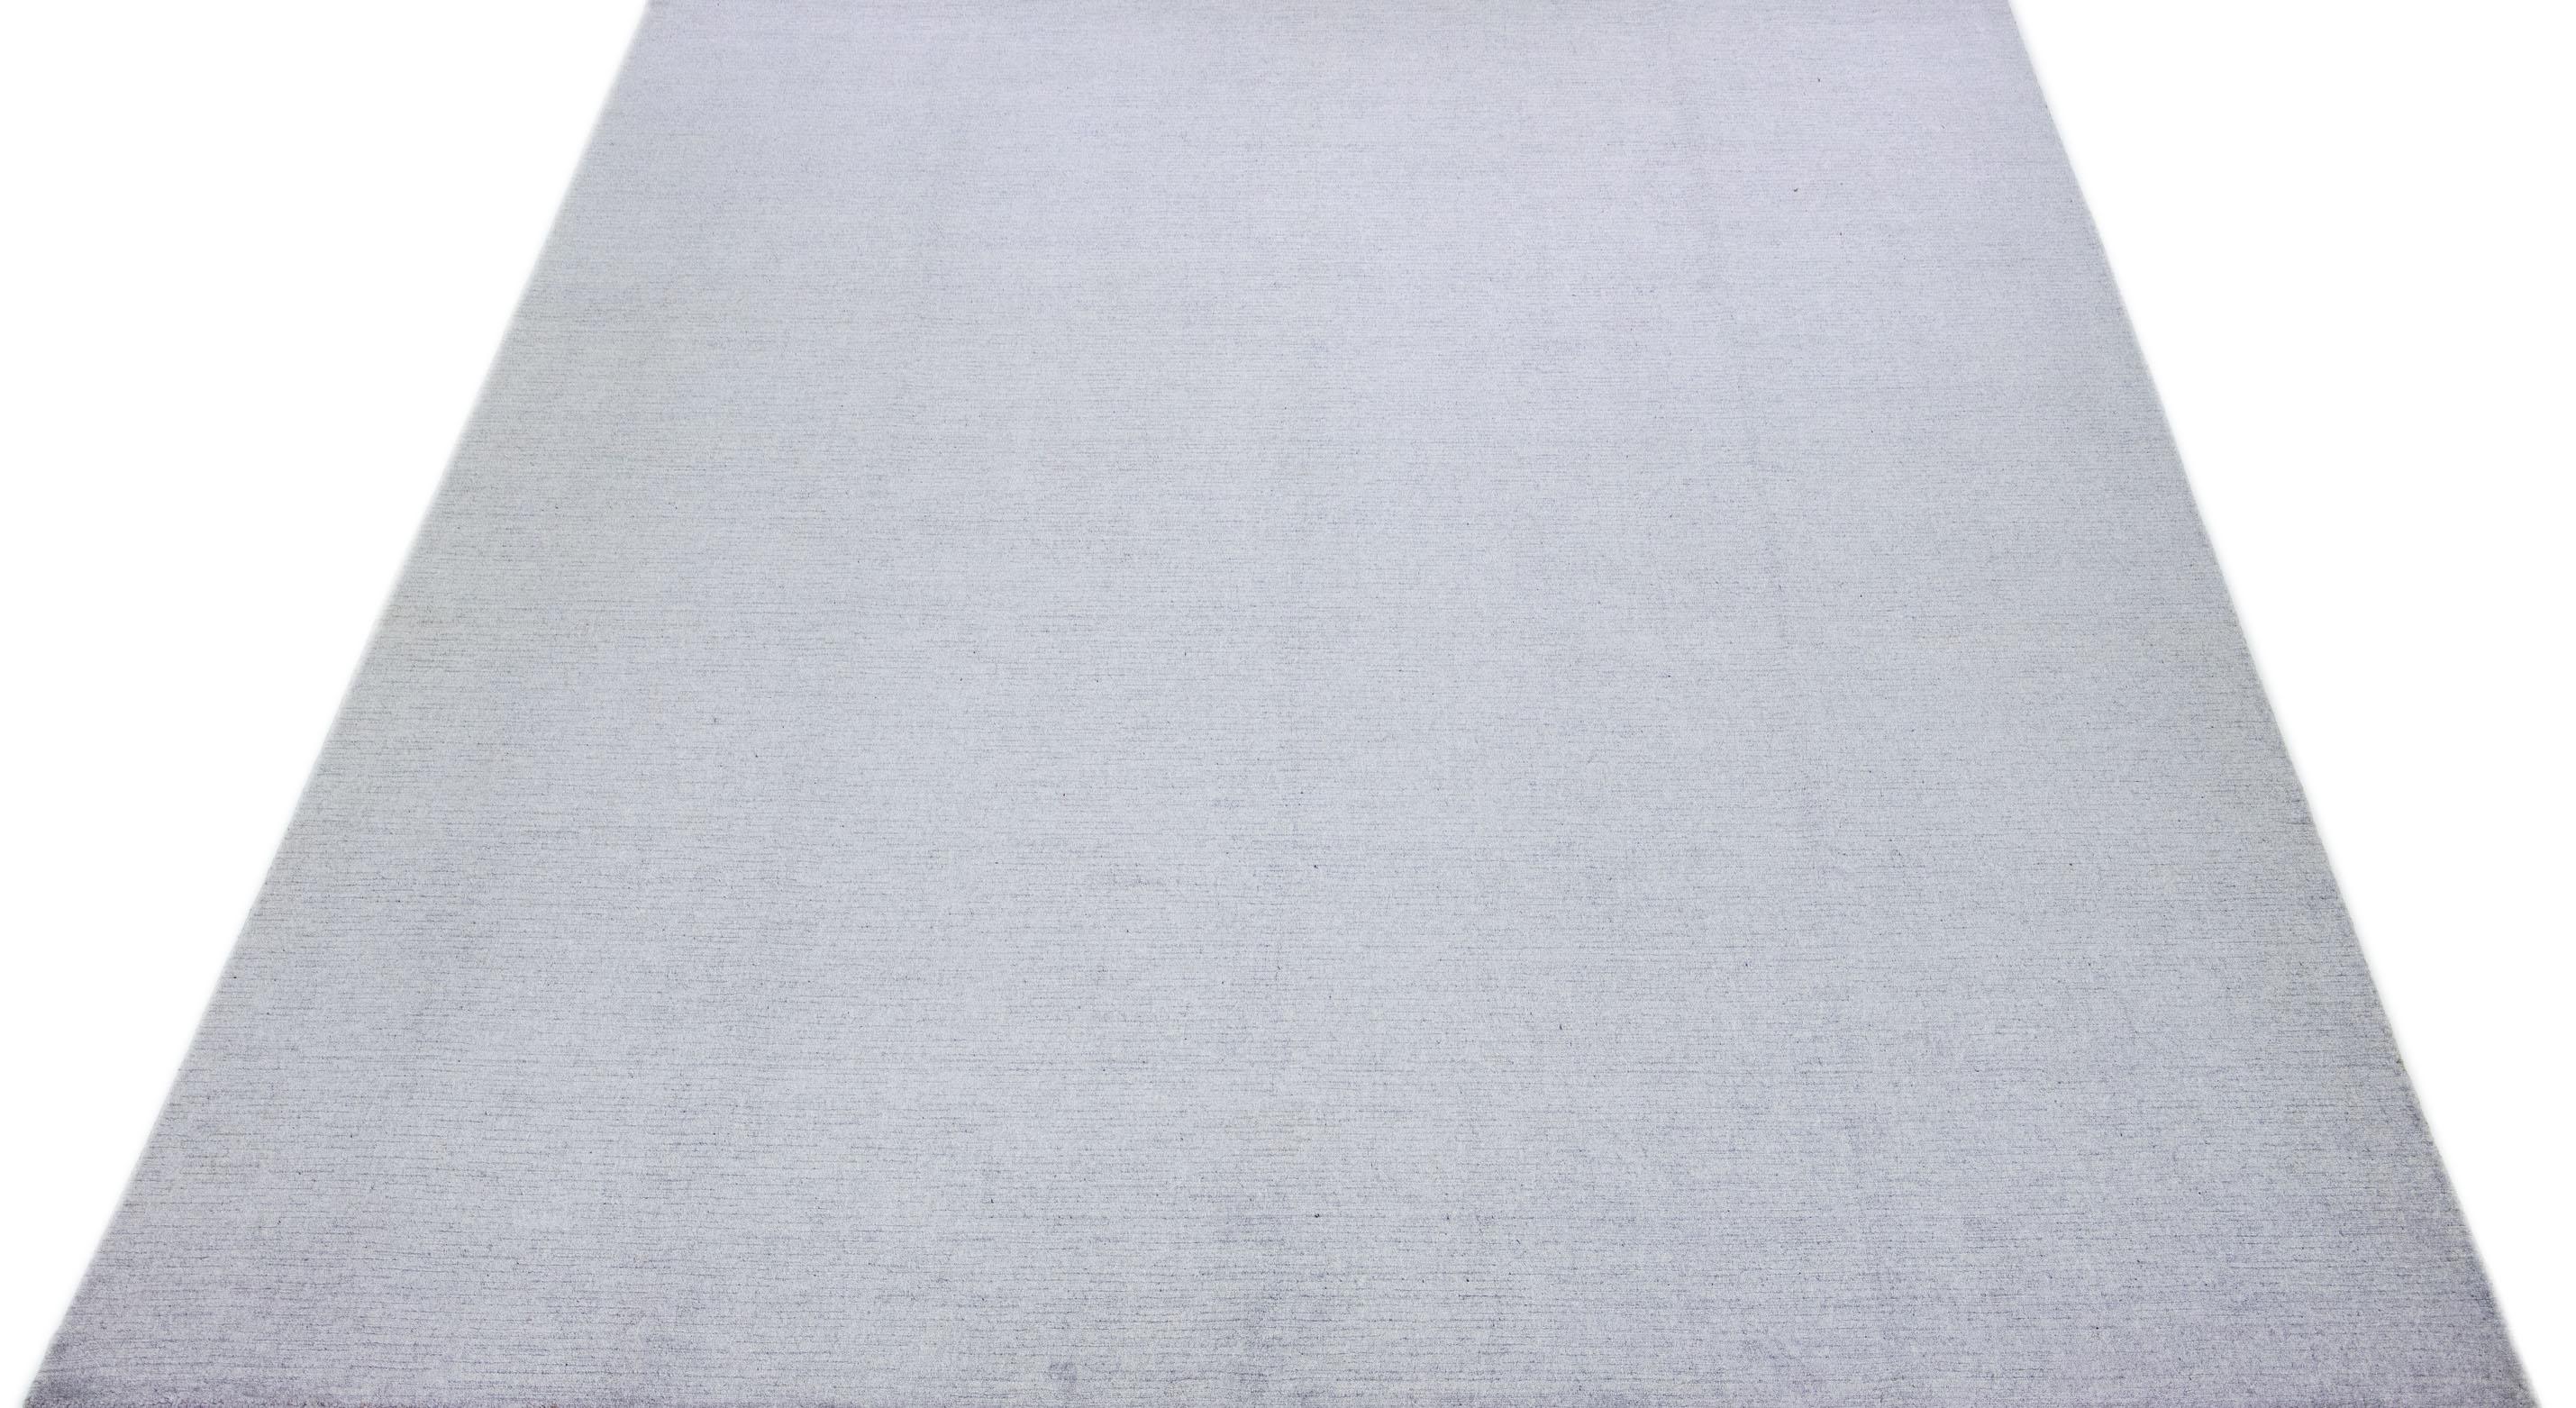 Cet exquis tapis contemporain en laine et soie présente une base gris-argent frappante ornée d'un étonnant motif géométrique qui s'étend gracieusement d'un bout à l'autre.

Ce tapis mesure 10'2